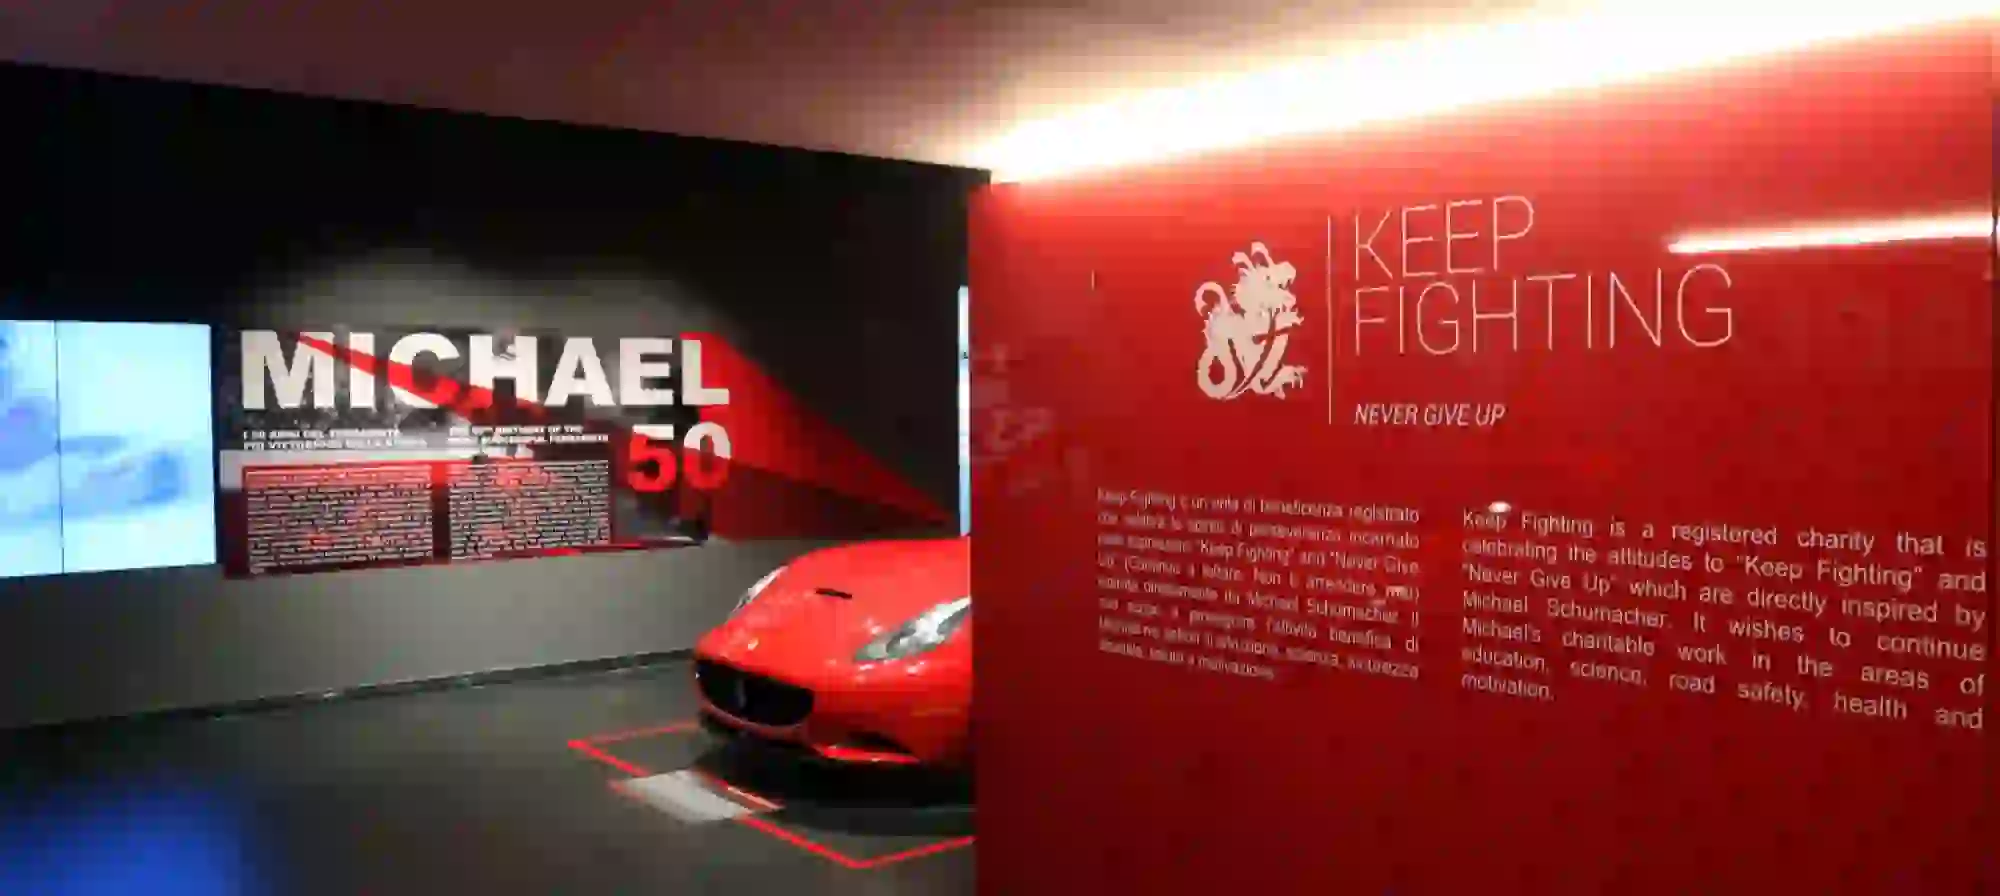 Ferrari - mostra Michael 50 - 19